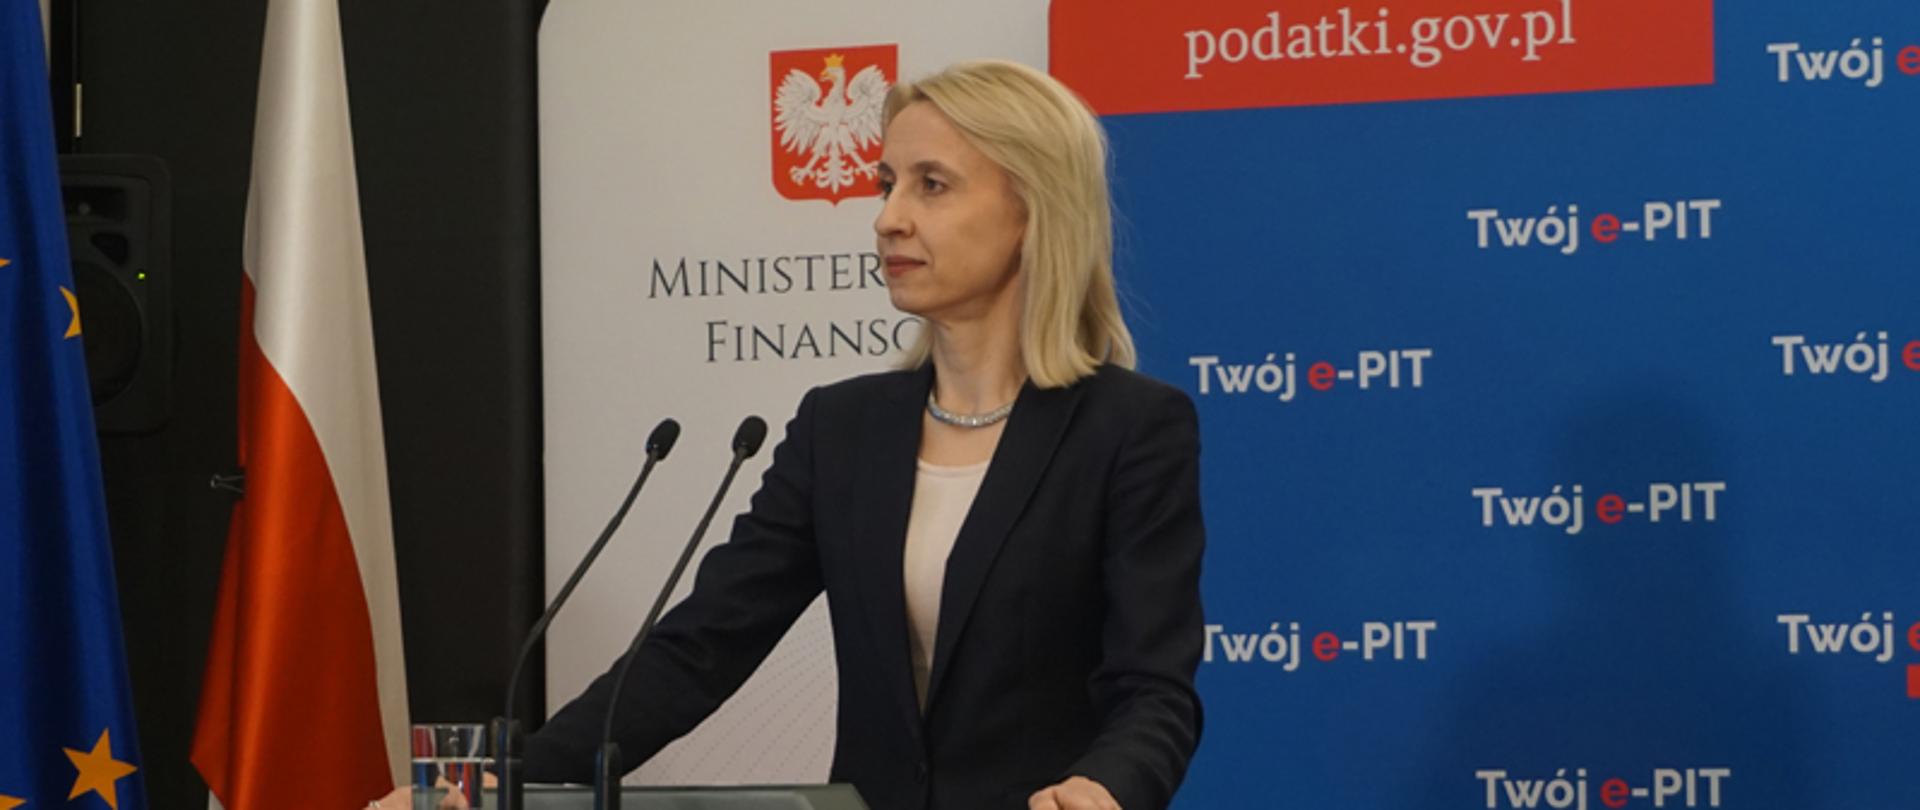 Minister Teresa Czerwińska podczas konferencji prasowej